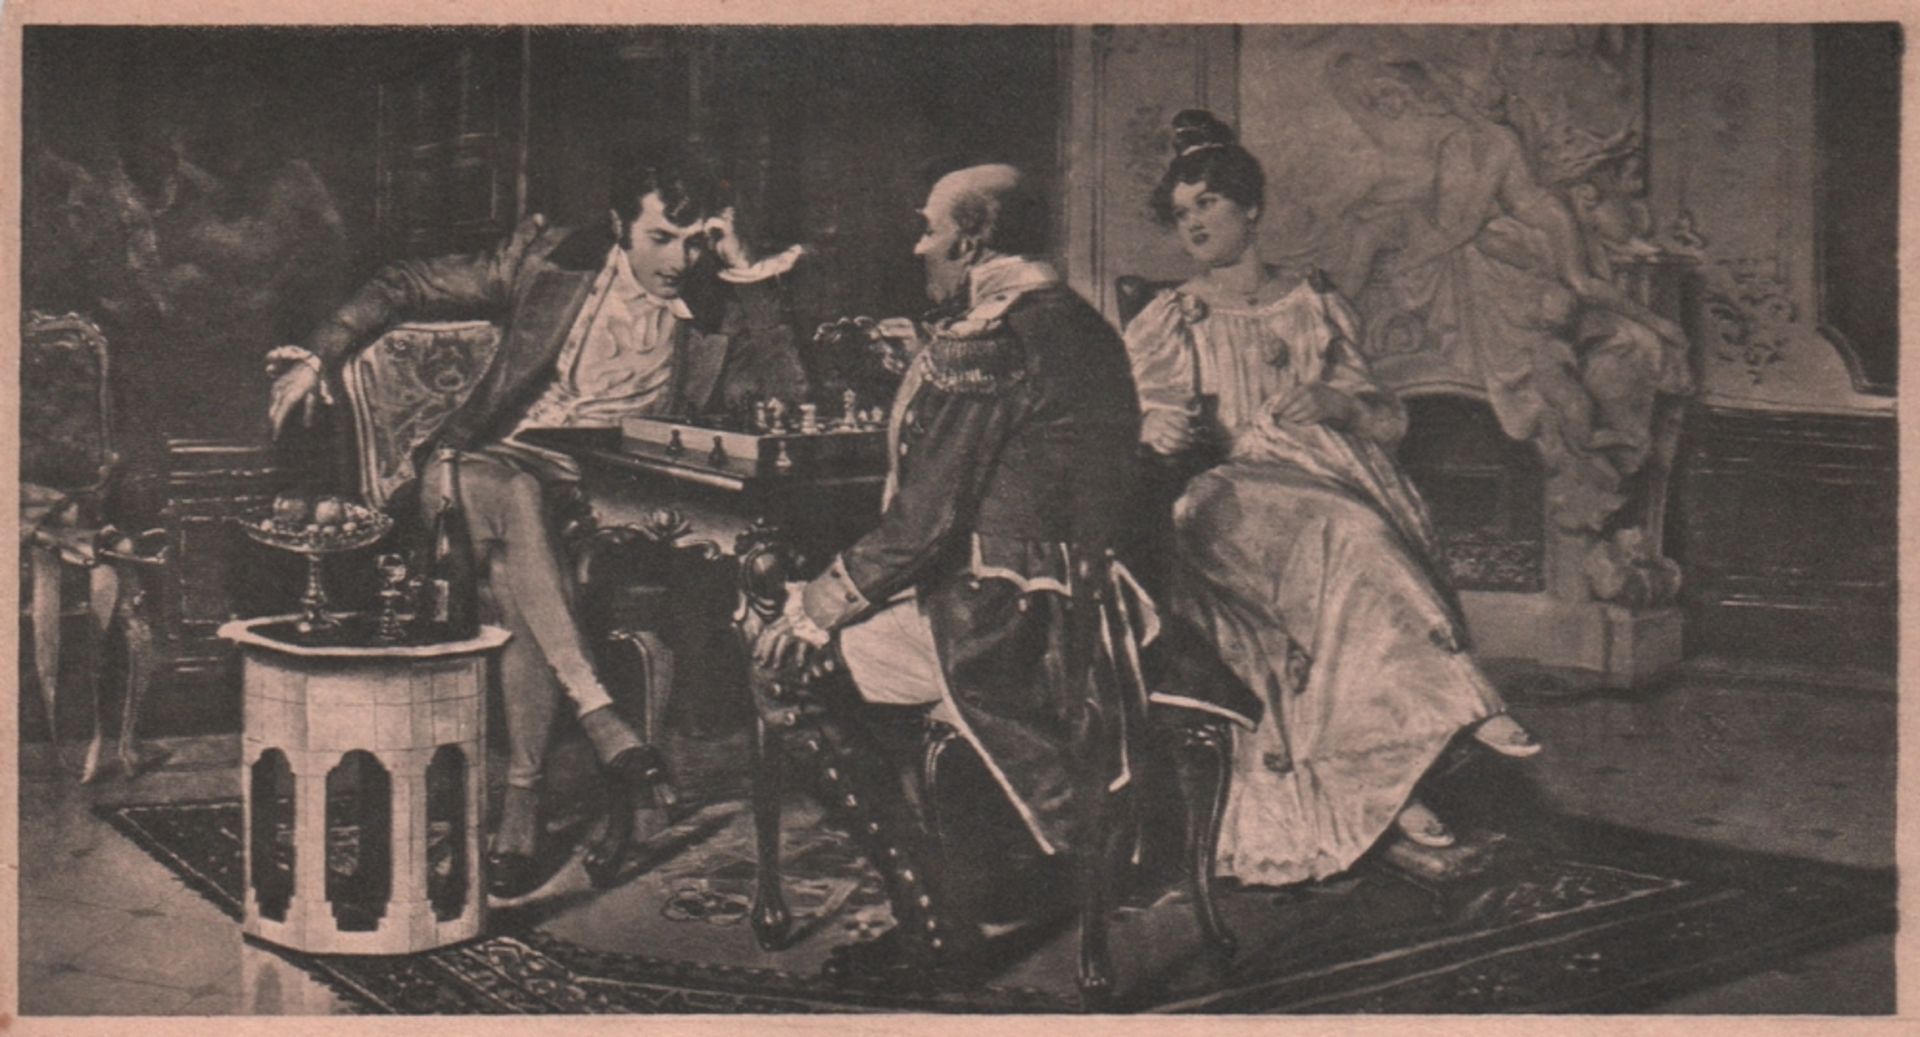 Postkarte. Zwei Herren beim Schachspiel. 5 schwarzweiße und postalisch gelaufene Postkarten aus